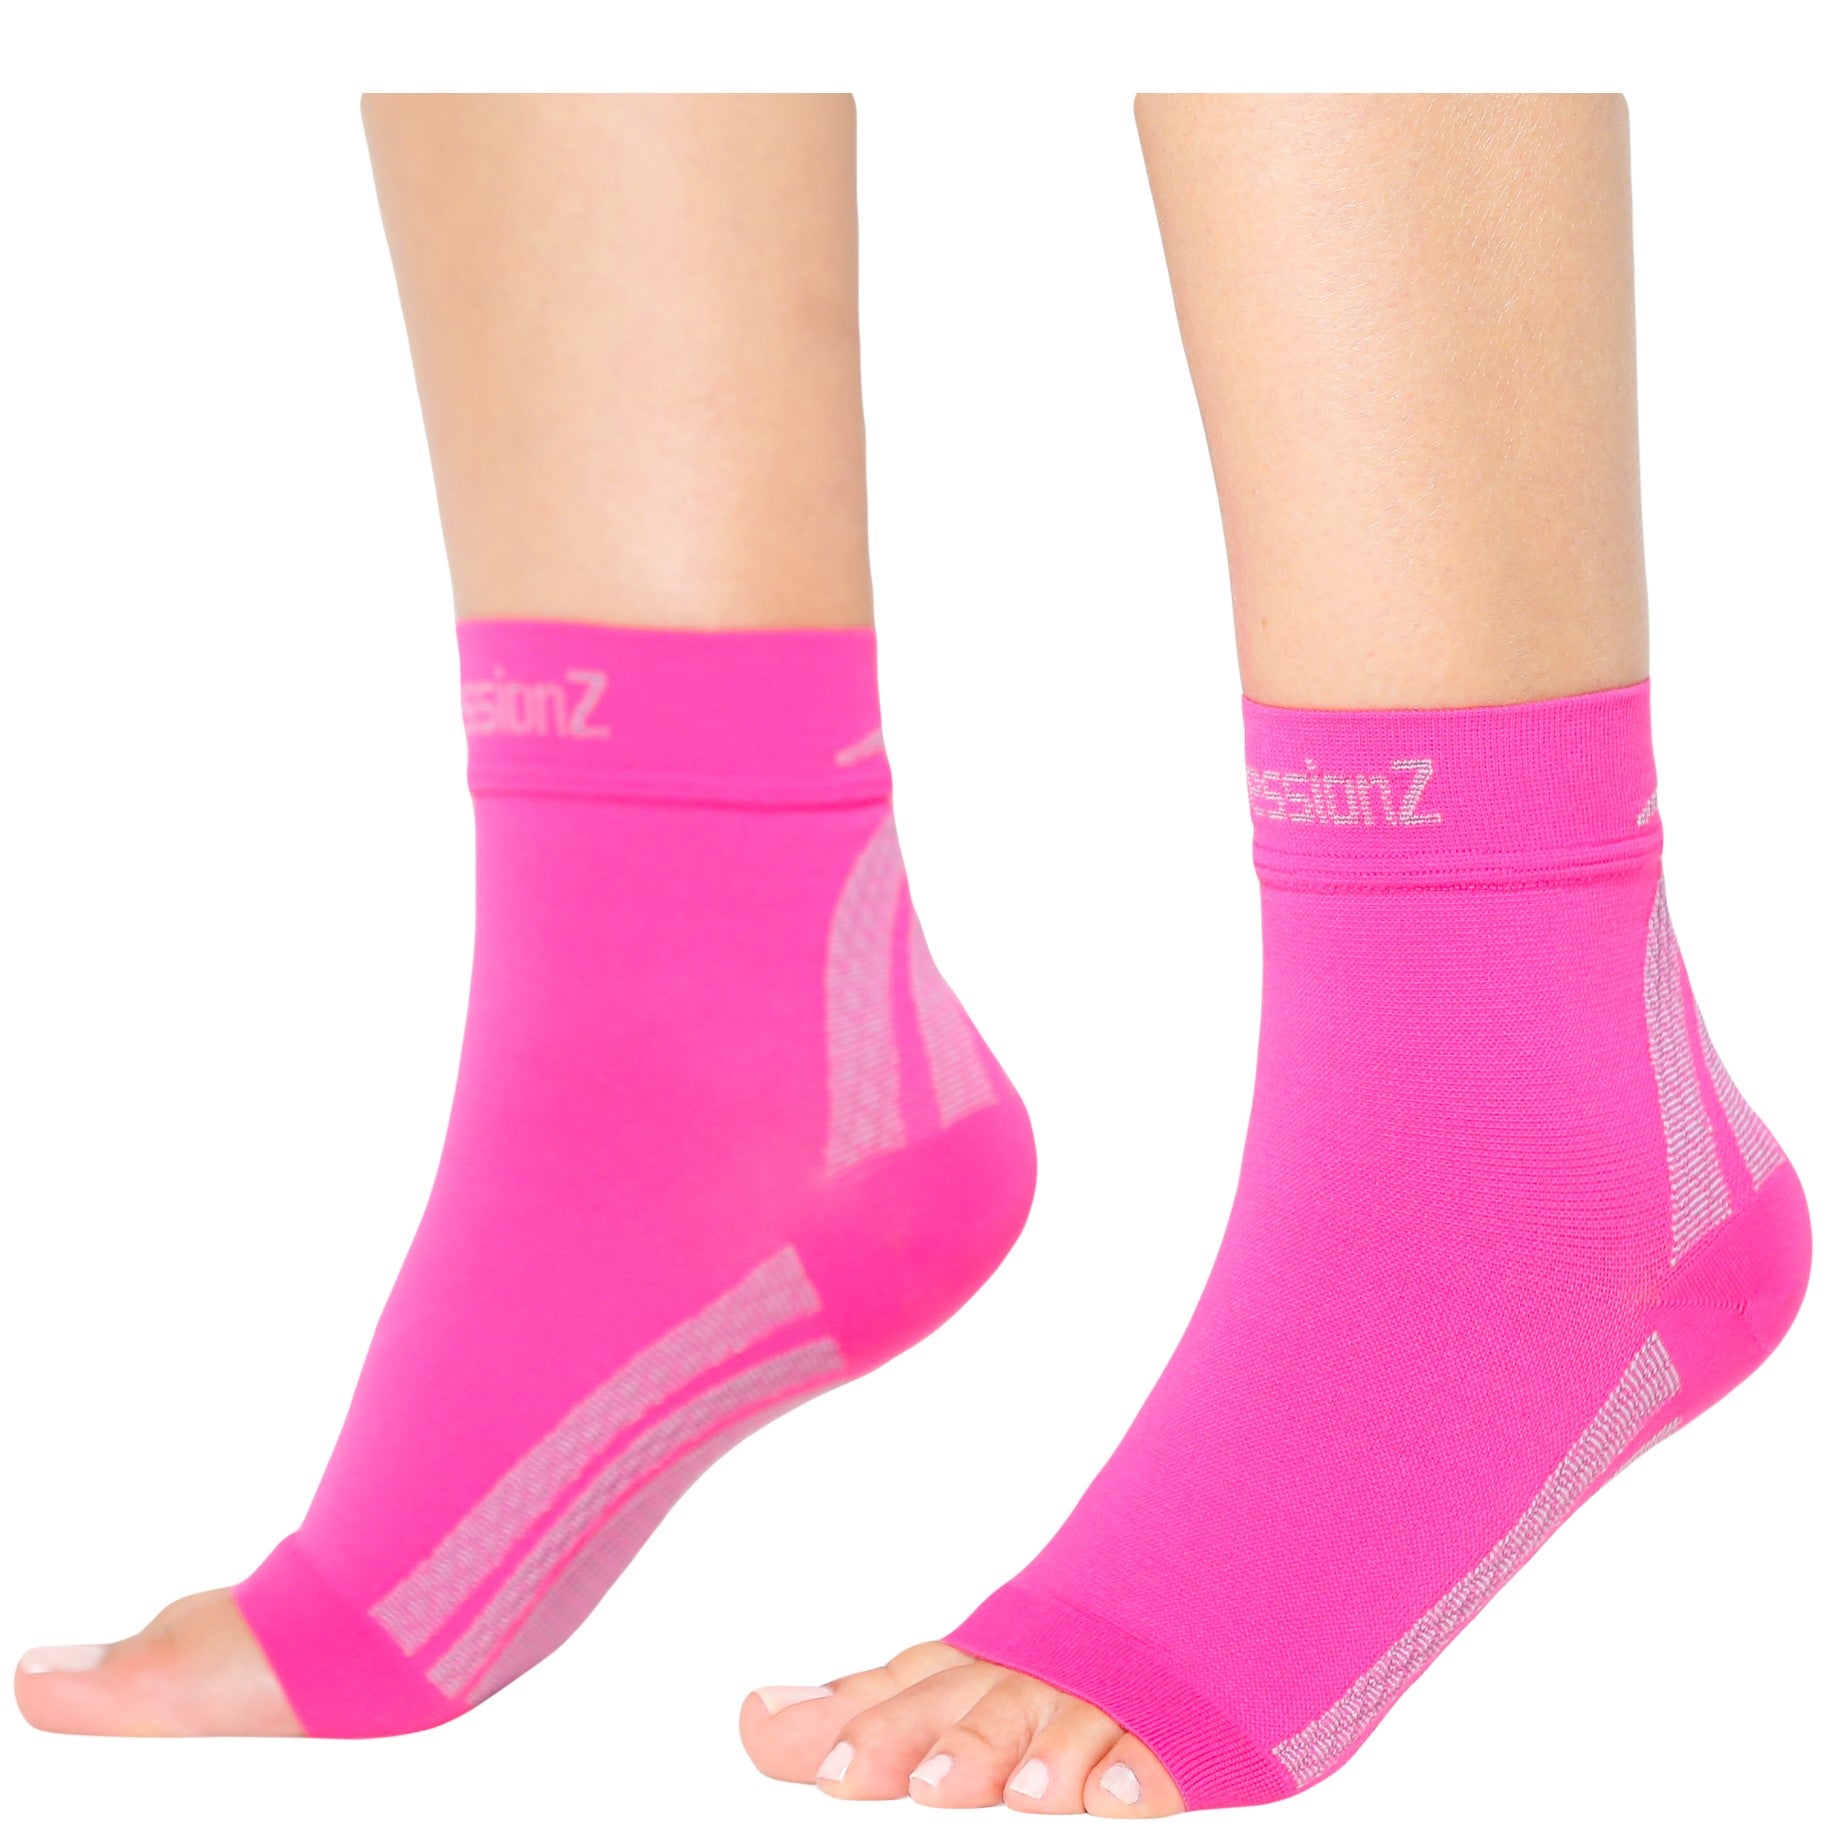 Foot Sleeves - Pink